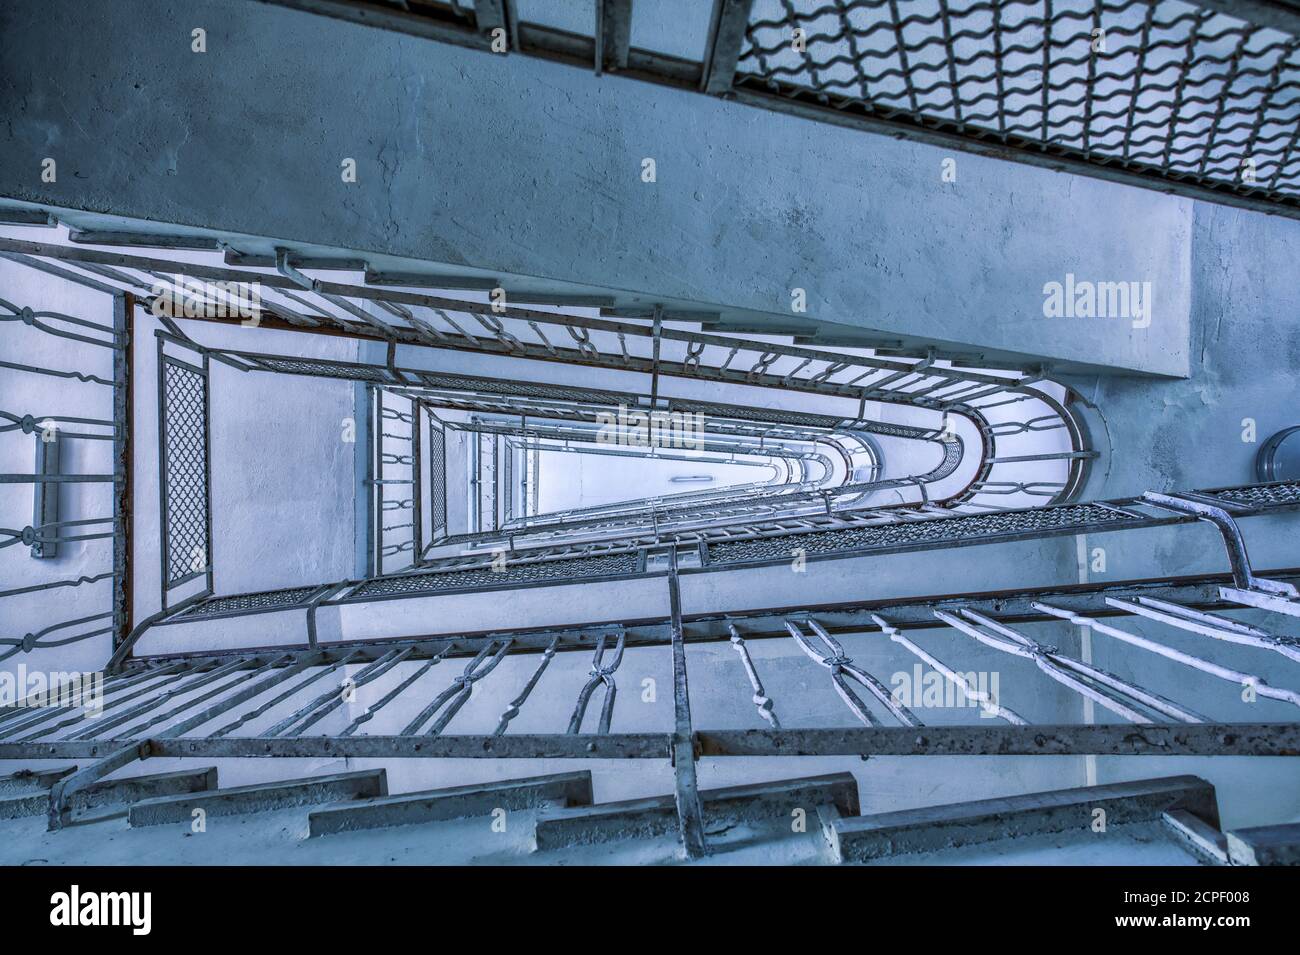 vue d'en dessous sur l'escalier avec une rampe de fer, image hypnotique, tonalité froide Banque D'Images